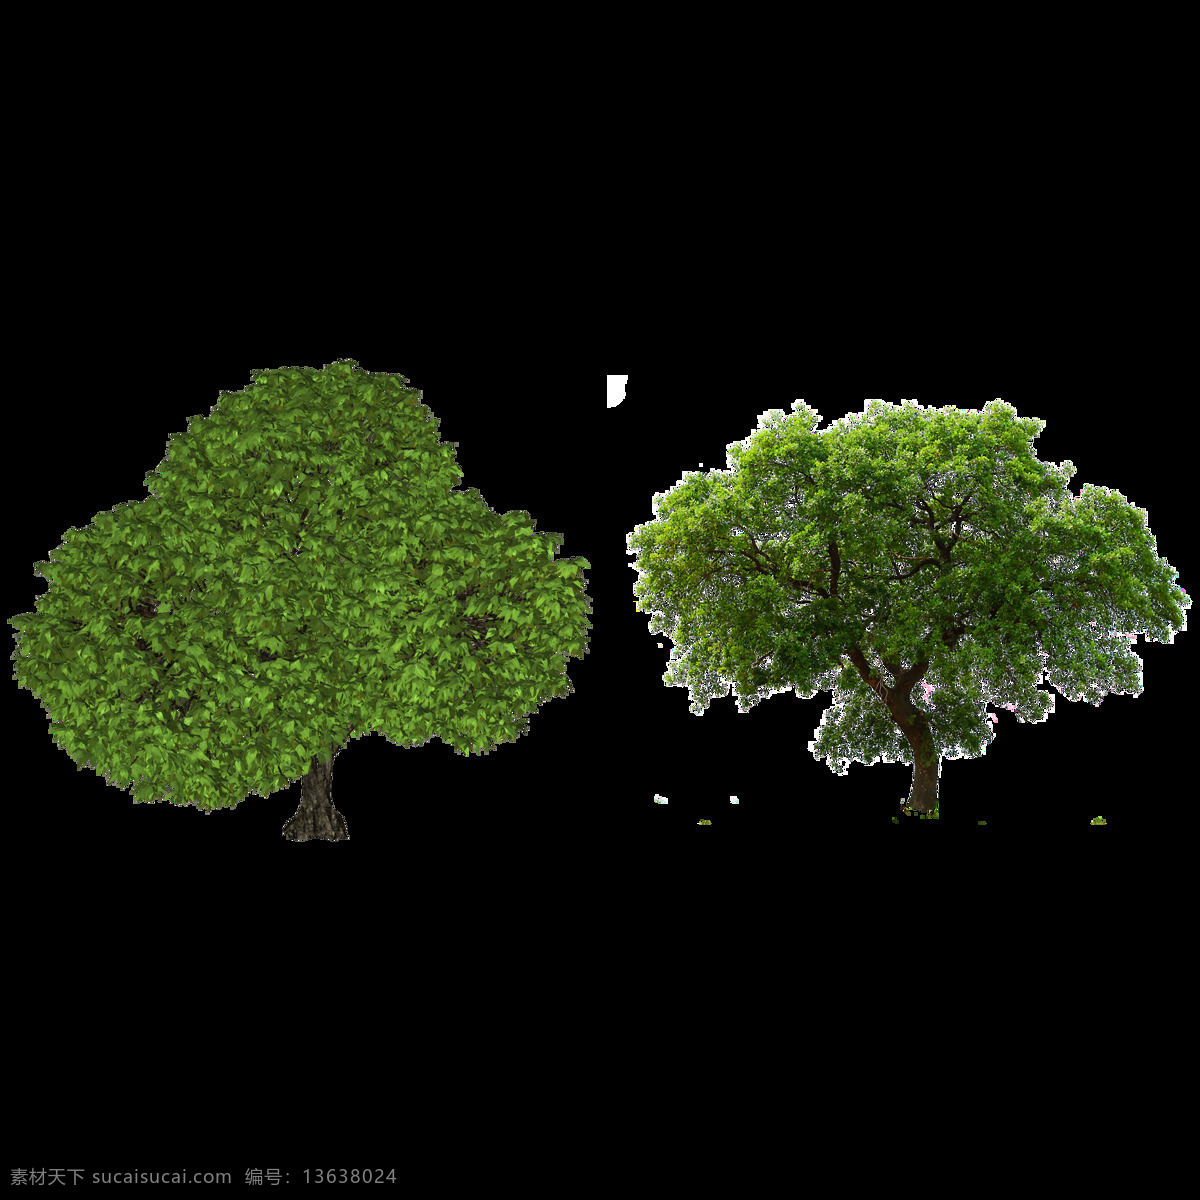 两 棵 绿色 大树 免 抠 透明 图 层 景观植物 植物图片 设计素材 树木背景 林木 植树节 透明图 植物 树叶 园林 树木 景观 植物素材 树木树叶 绿色素材 绿树